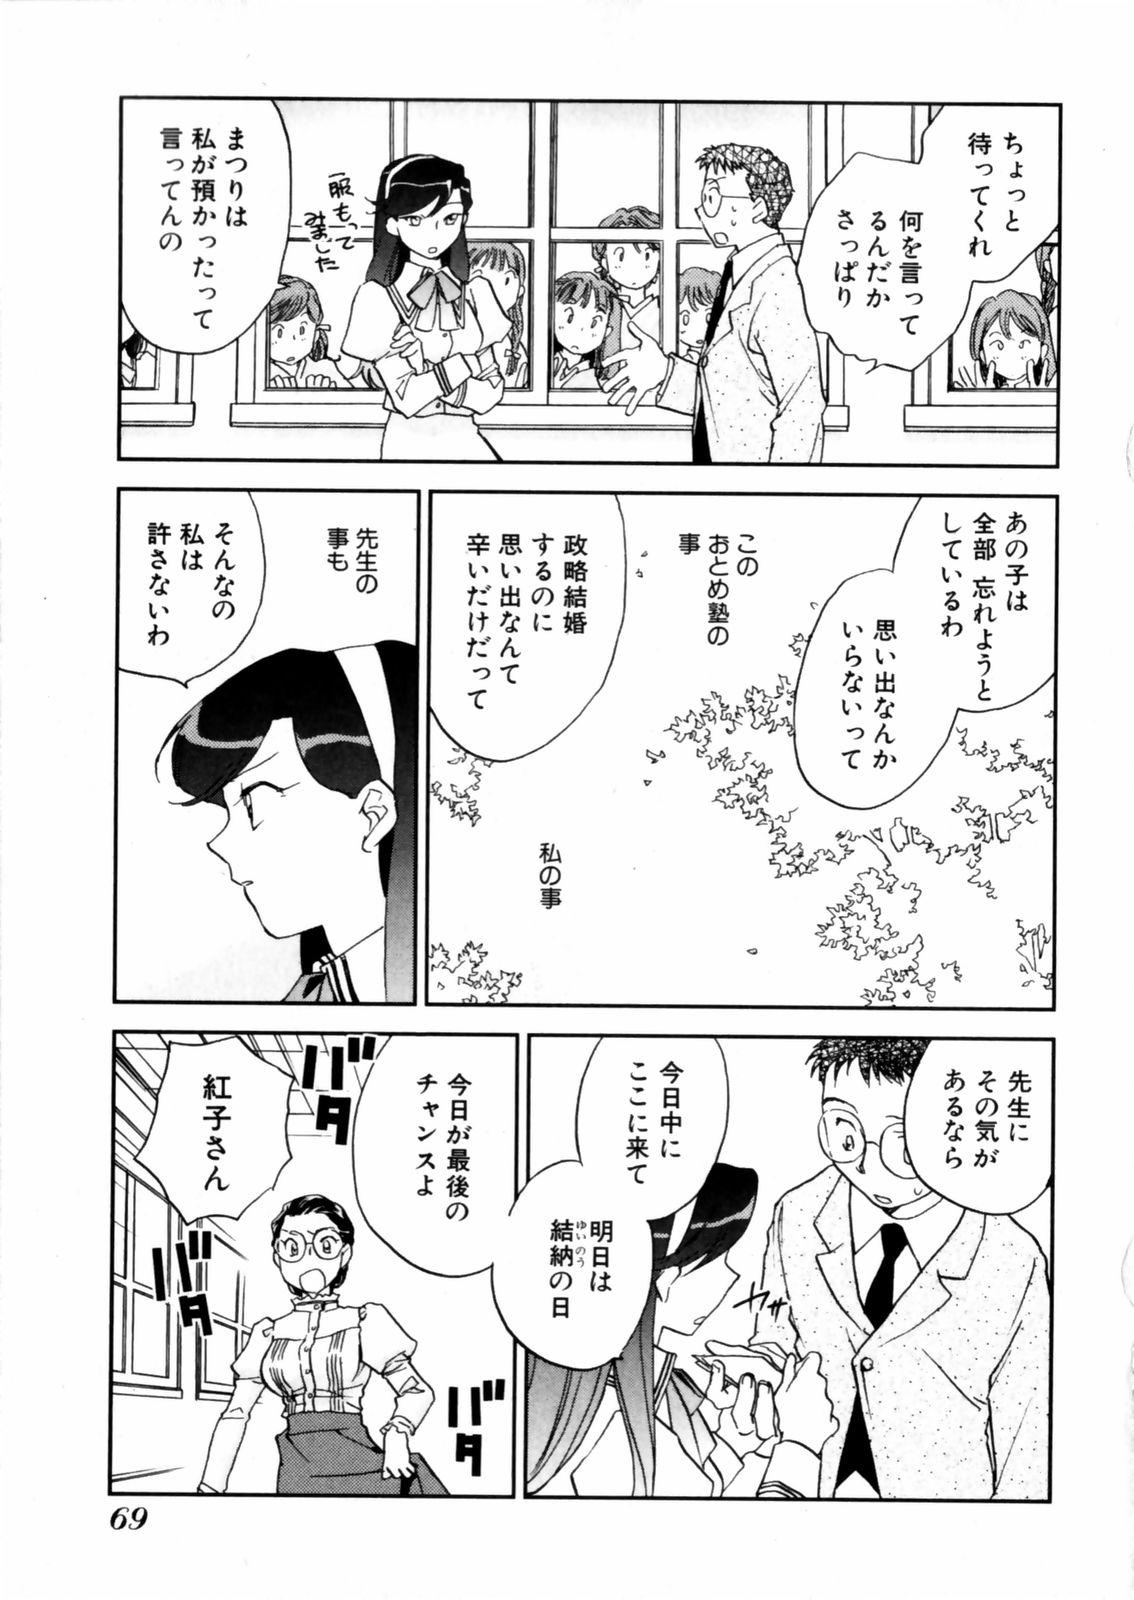 [Okano Ahiru] Hanasake ! Otome Juku (Otome Private Tutoring School) Vol.2 70